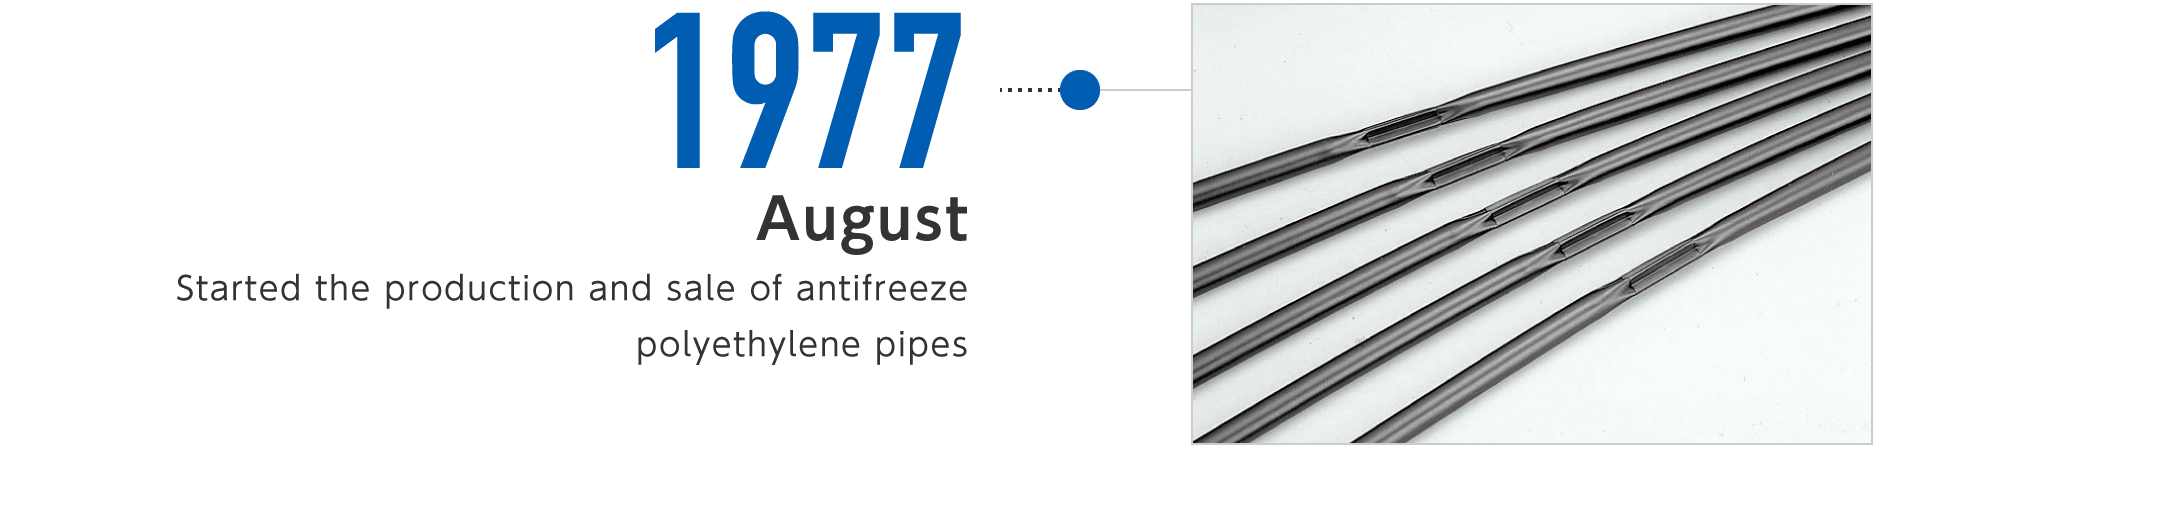 1977年8月-凍結故障防止用PEパイプの製造・販売を開始